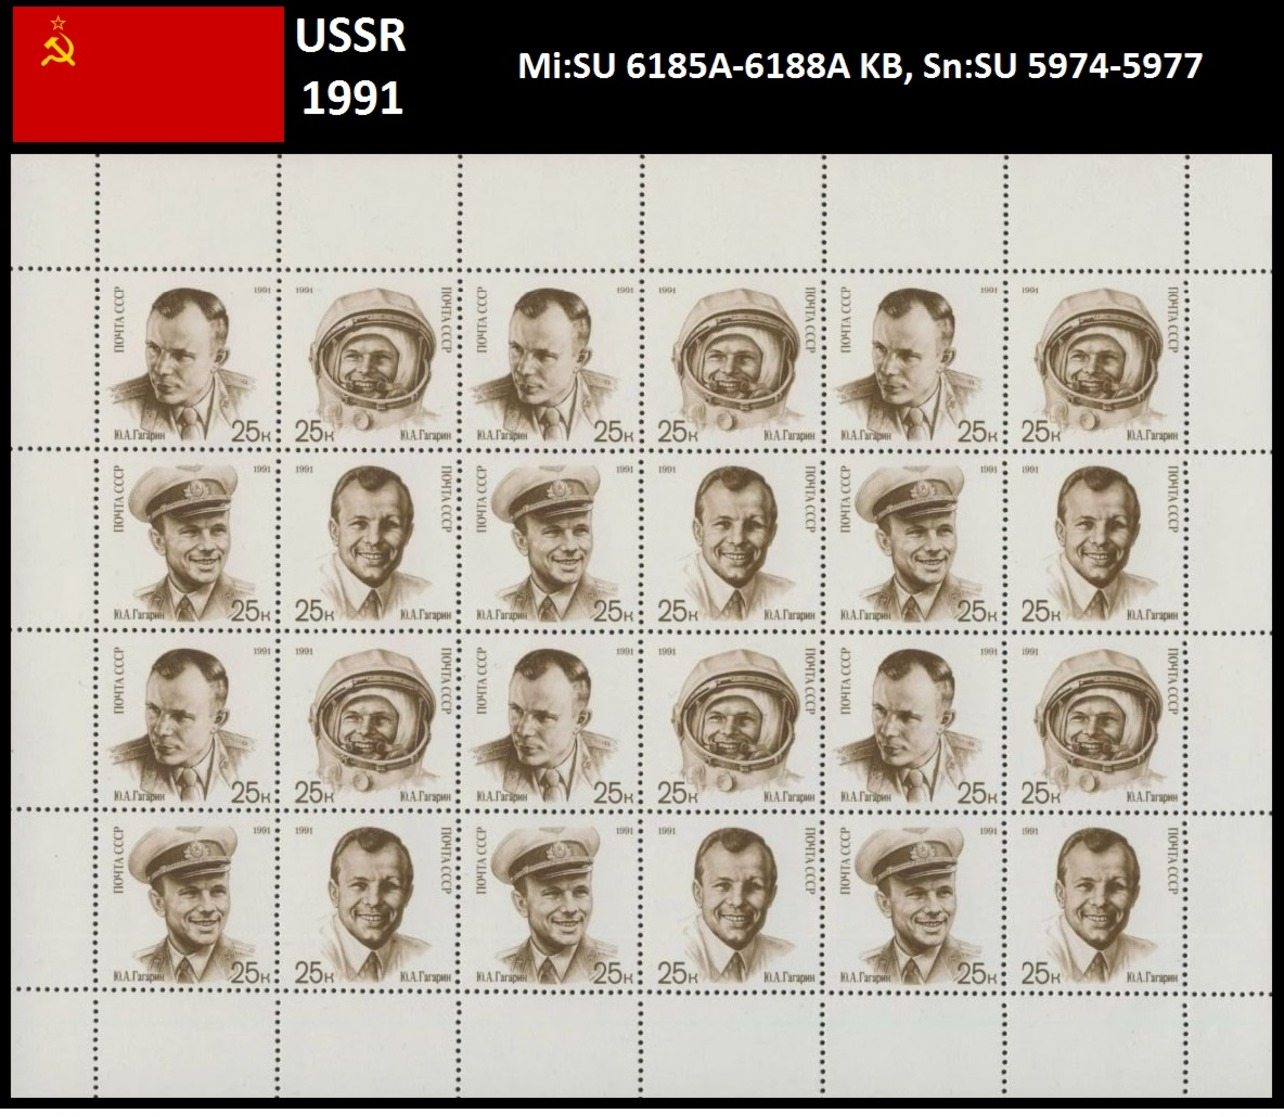 SSSR1991 30 Jahre Bemannte Raumfahrt. Y.A. Gagarin Mi: SU 6185A-6188A KB, Sn: SU 5974-5977 - Ganze Bögen